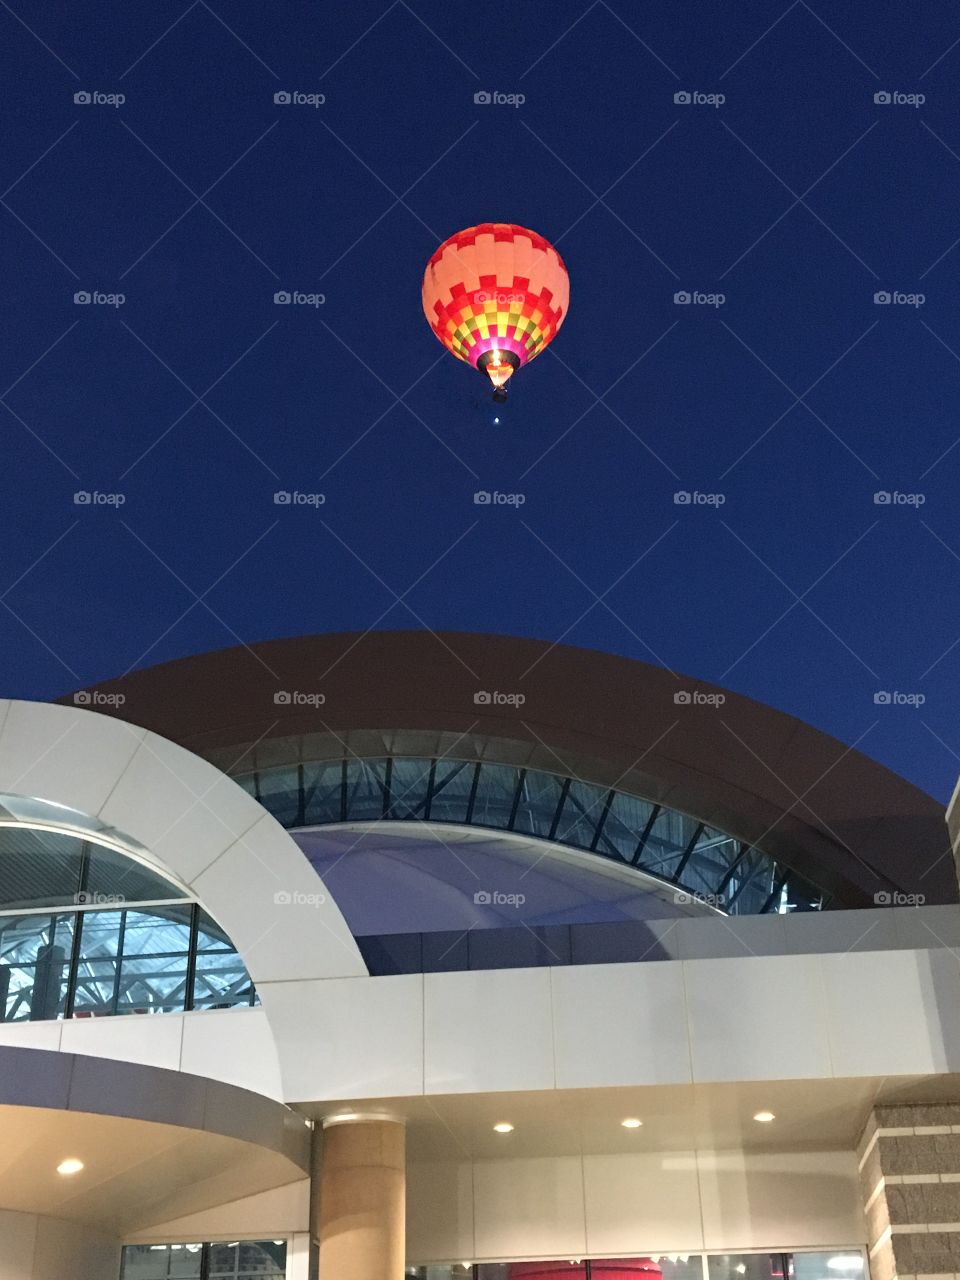 Dawn Patrol - Hot Air Balloon over the Museum, Albuquerque NM 2018